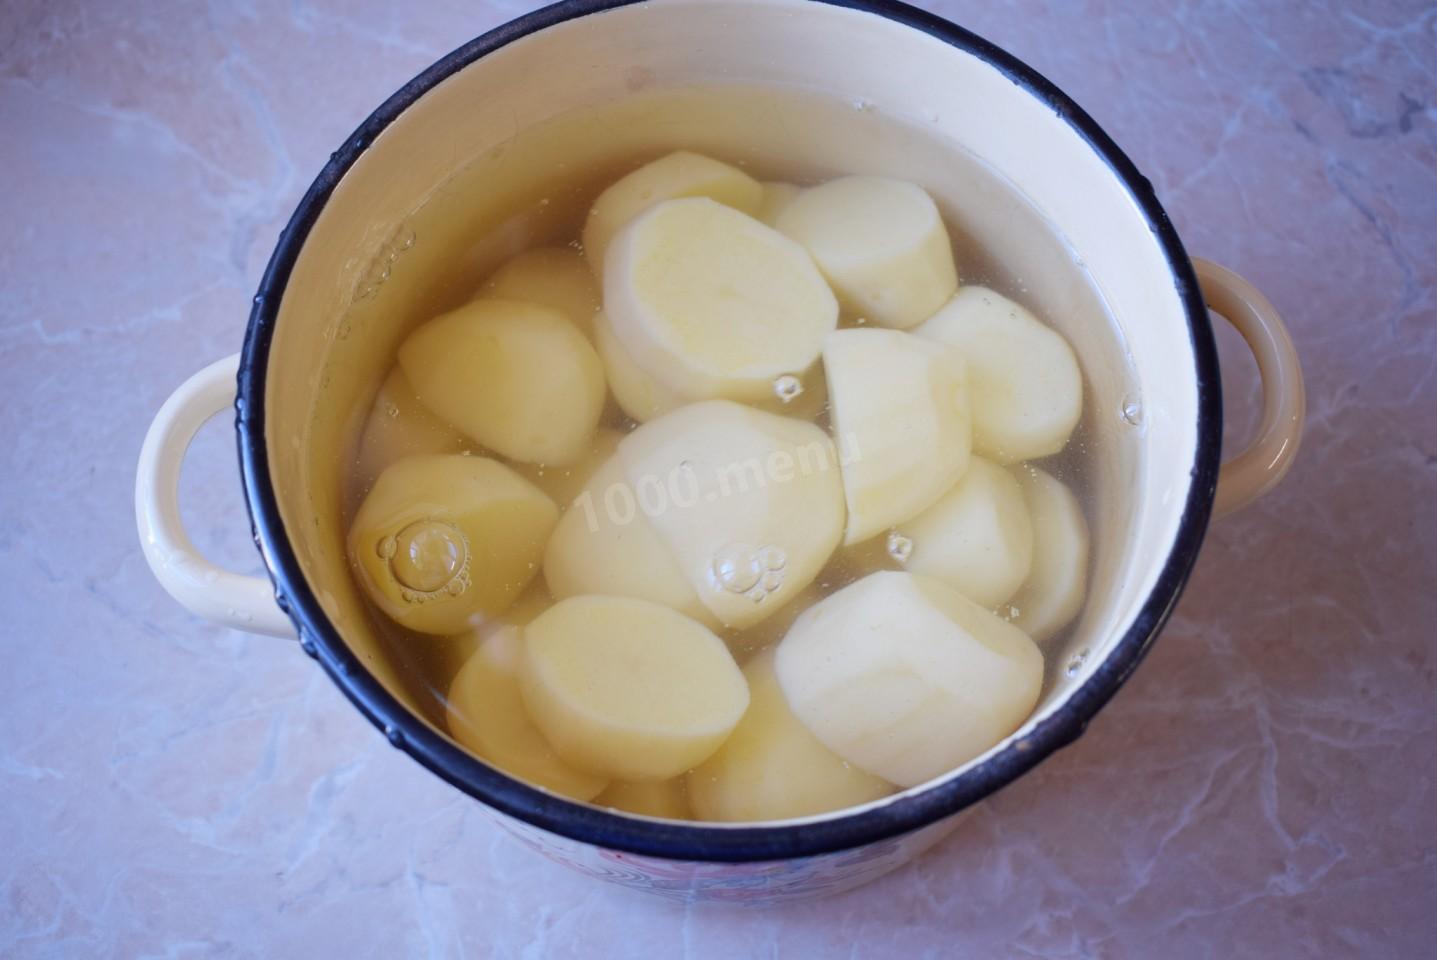 Картошку залило водой. Холодная картошка. Чищенная картошка в кастрюле. Очищенный картофель банка с крышкой. Как приготовить пюре из картошки без молока.